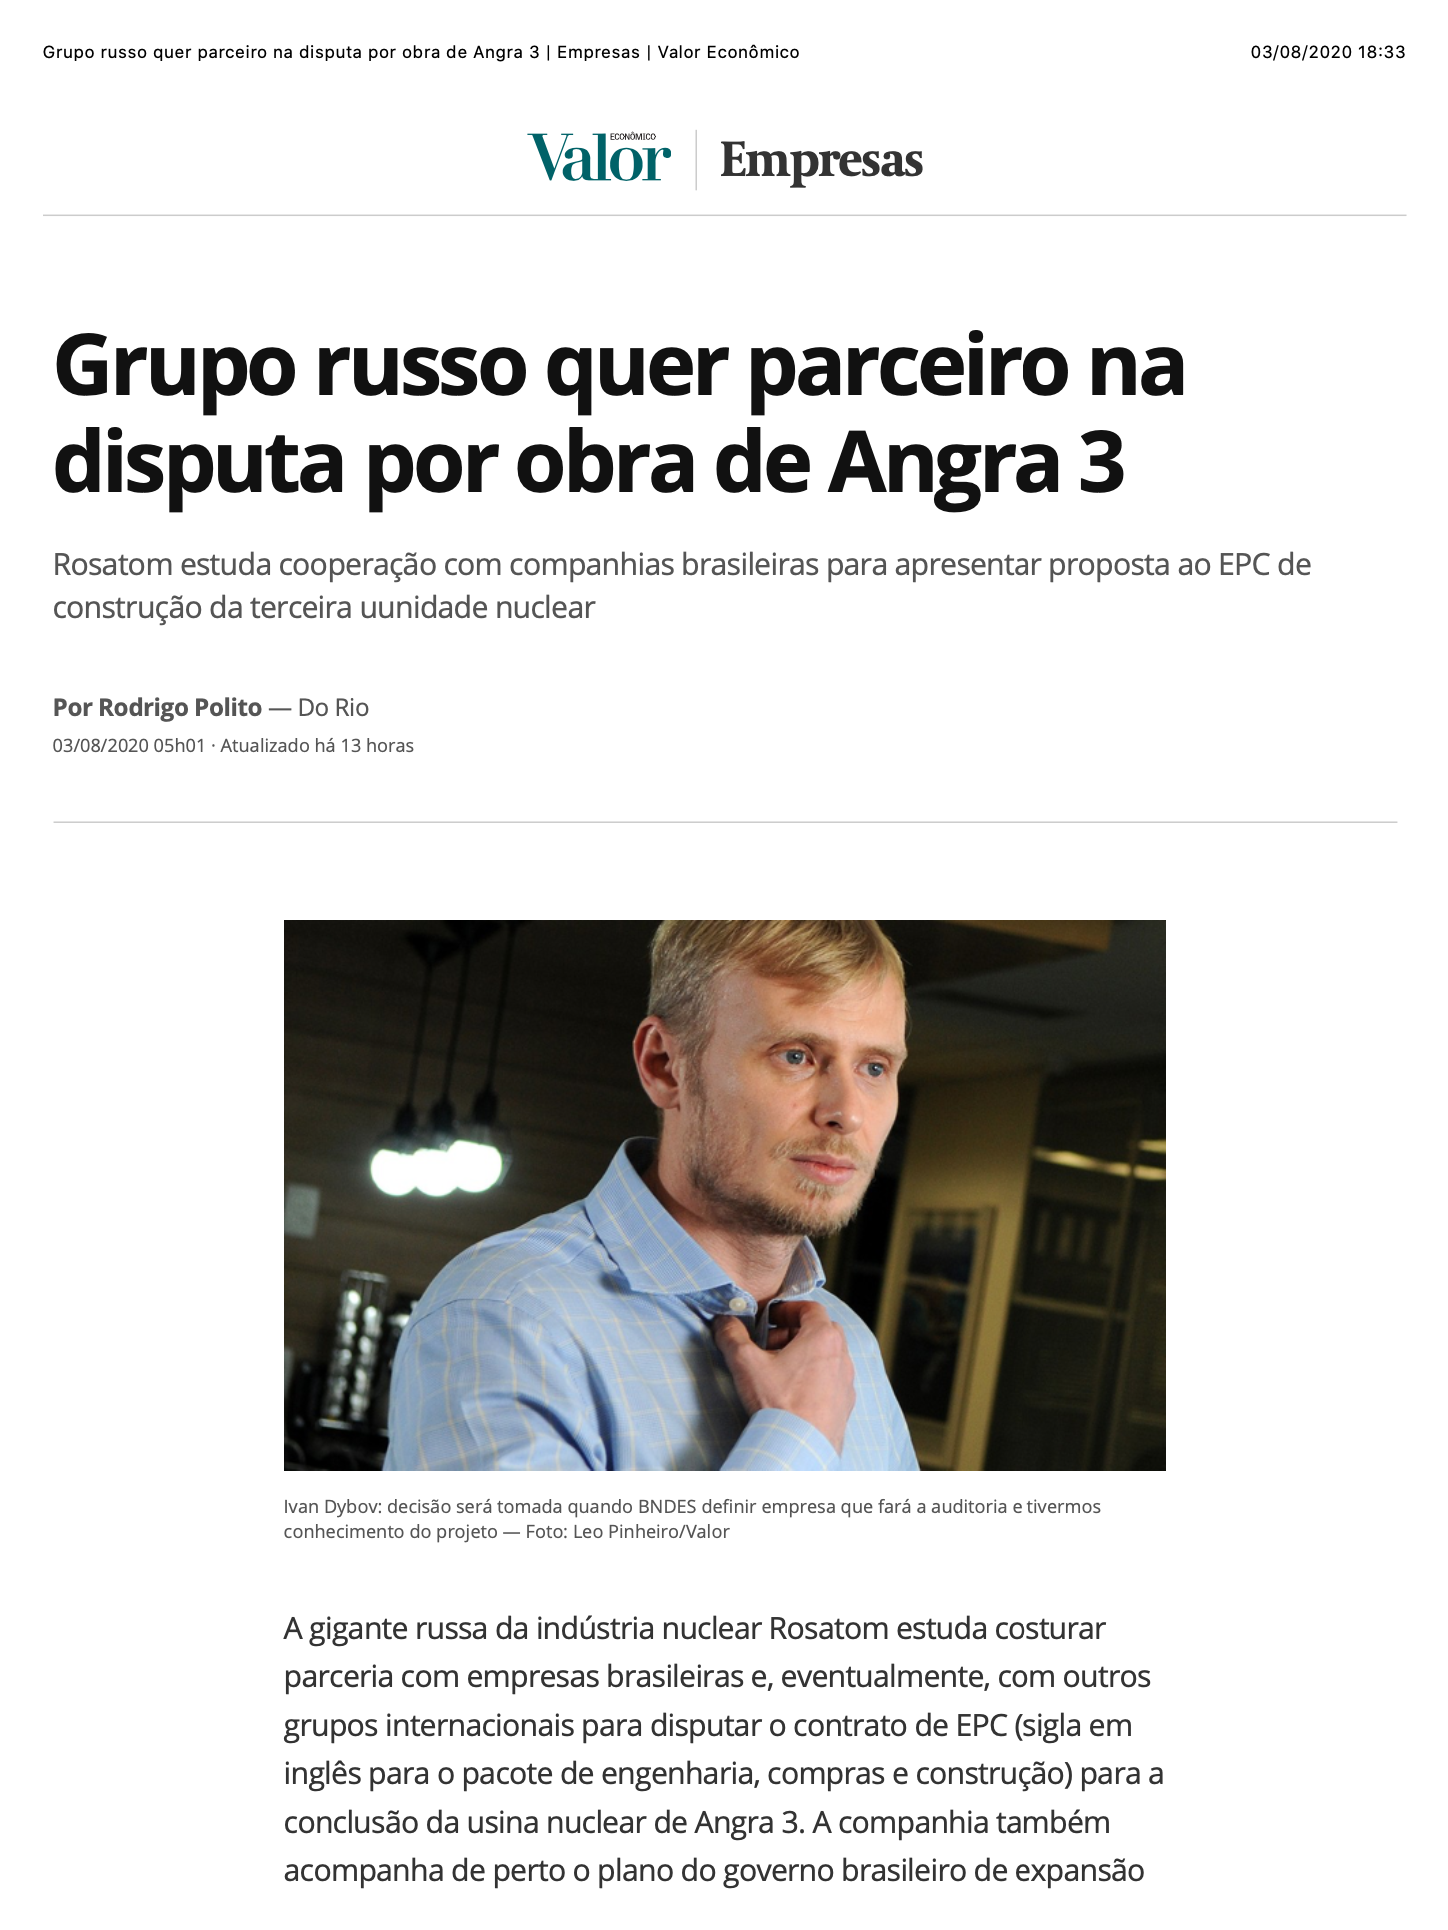 Grupo russo quer parceiro na disputa por obra de Angra 3 (Valor Econômico)